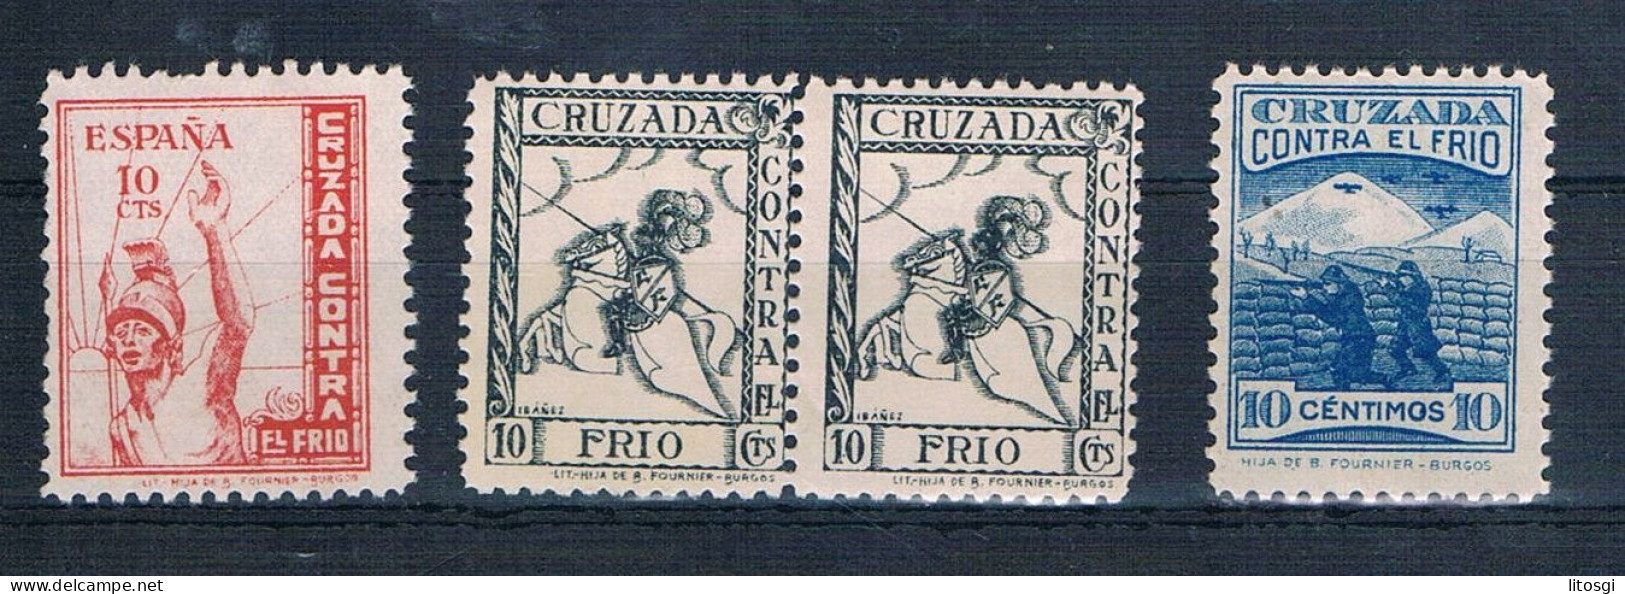 ESPAÑA 1937 CRUZADA CONTRA EL FRIO NUEVOS - Spanish Civil War Labels